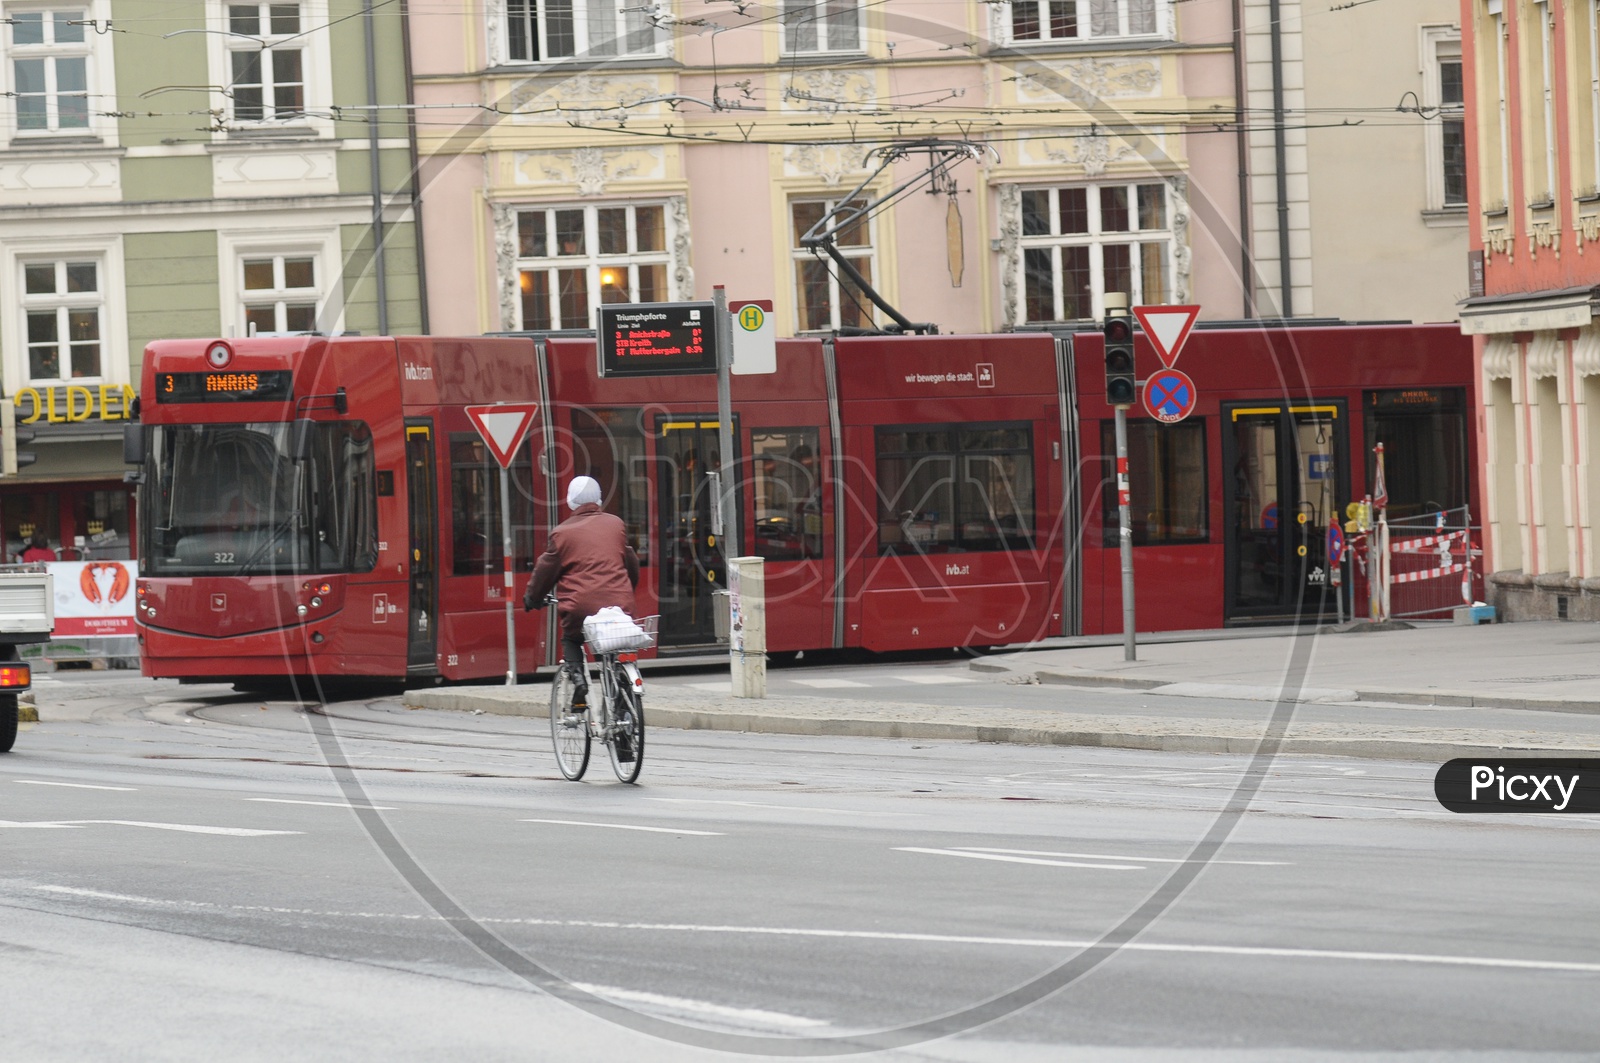 Red Tram in Austria